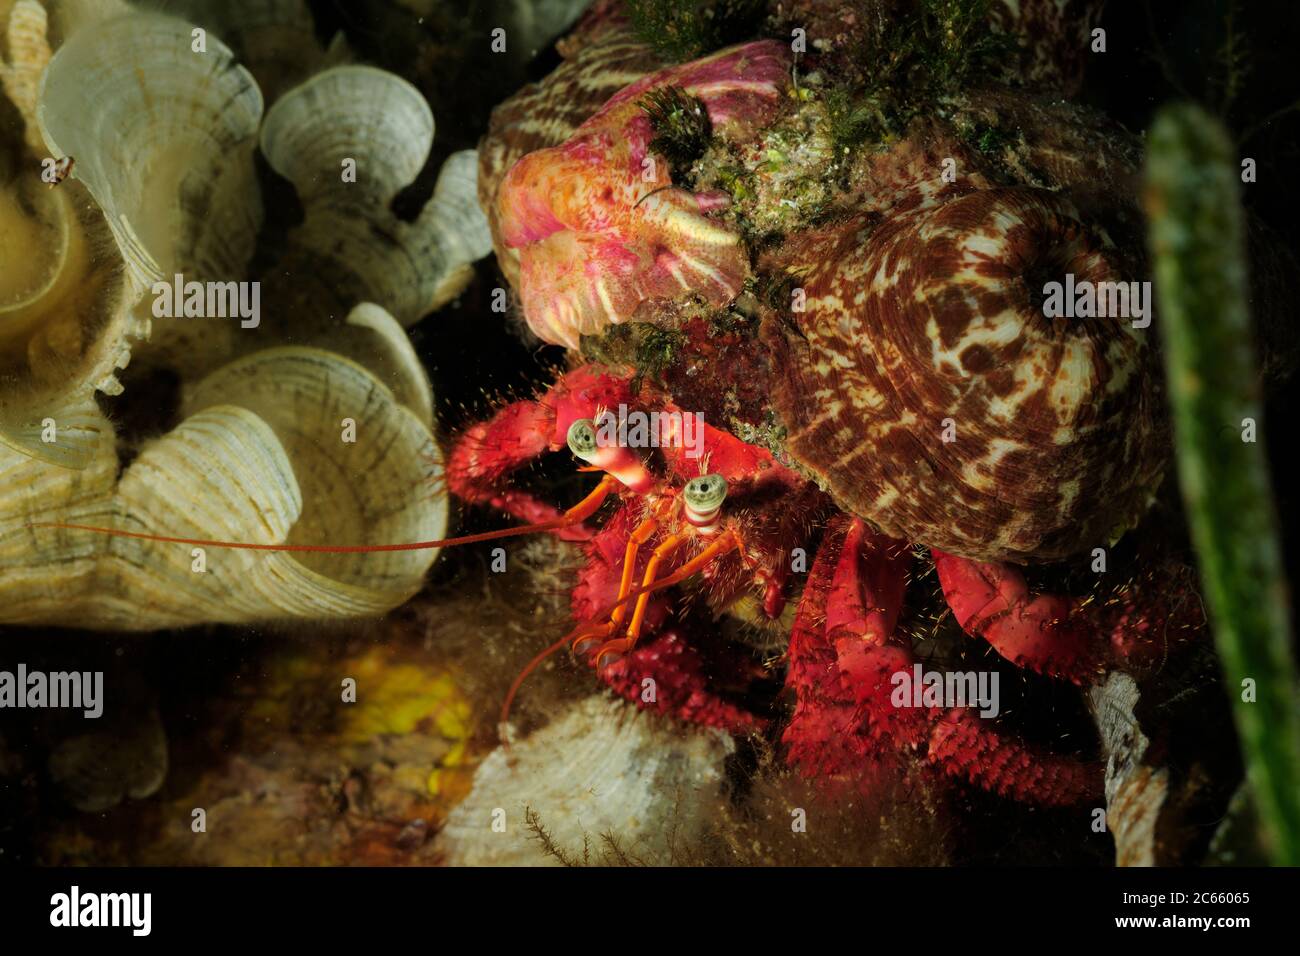 Crabe ermite (Dardanus Arrosor) et anémone parasite (Calliactis parasitica) Banque D'Images